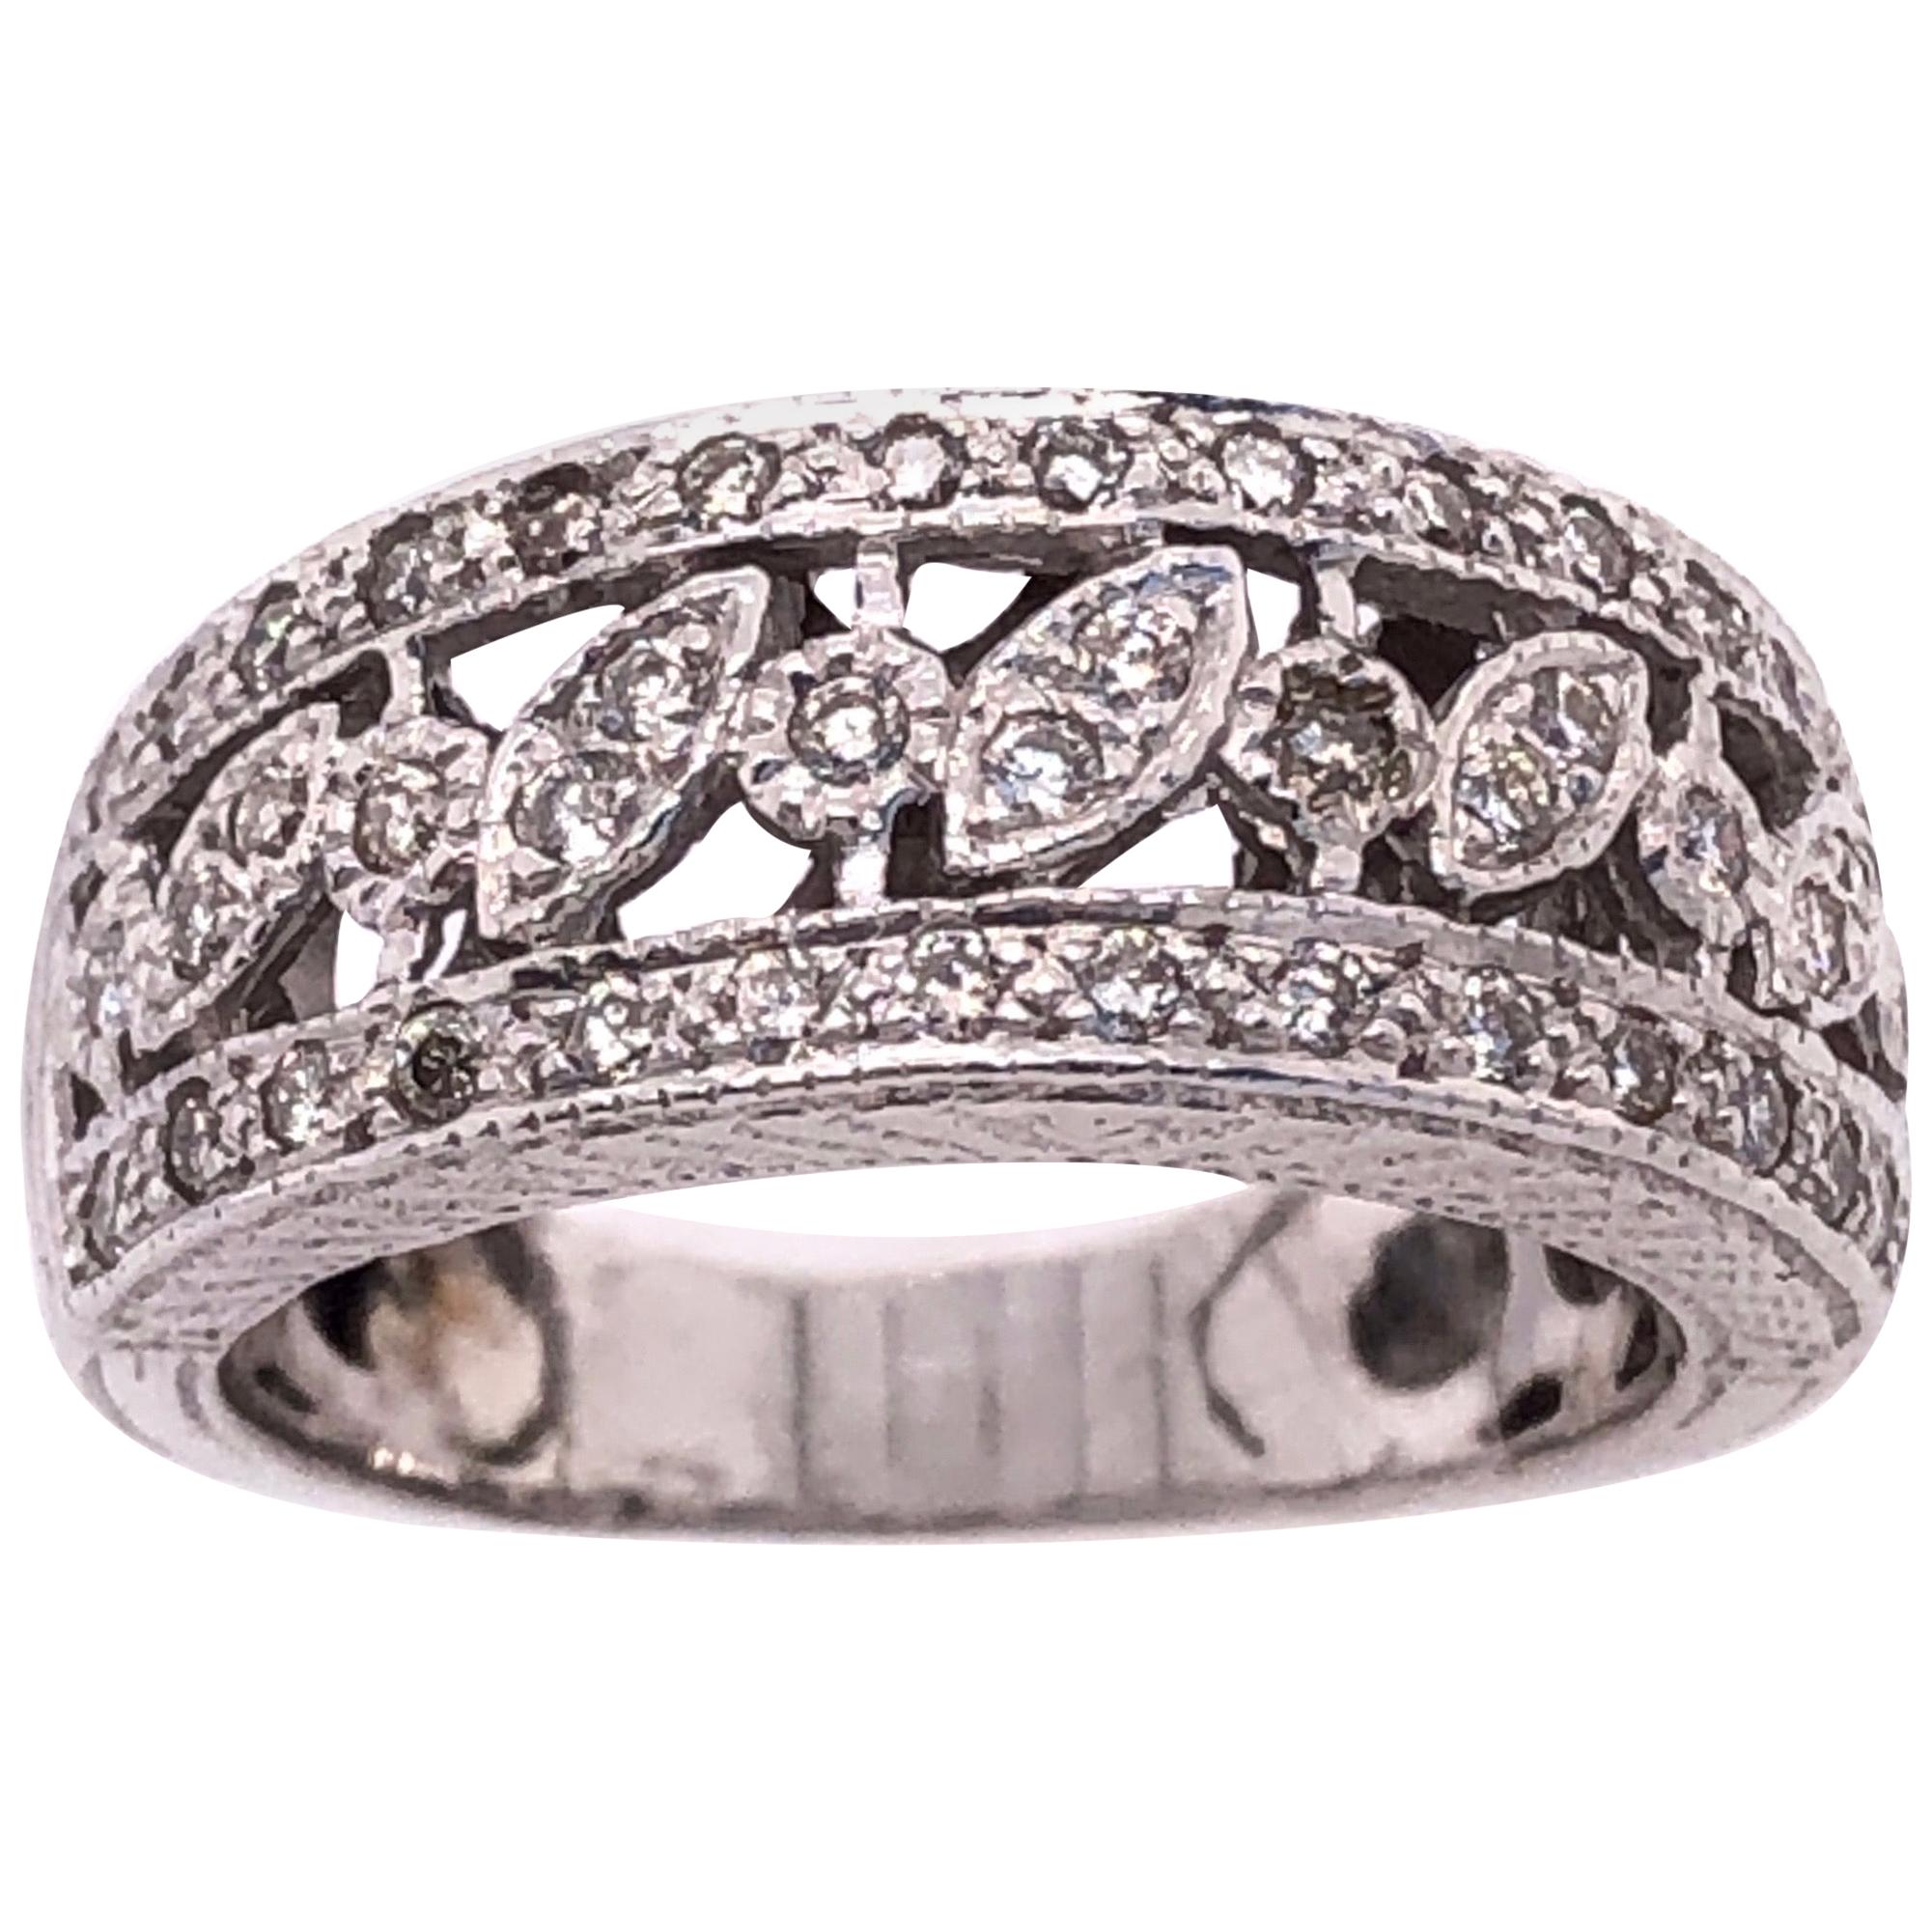 14 Karat White Gold Diamond Wedding Band Bridal Ring